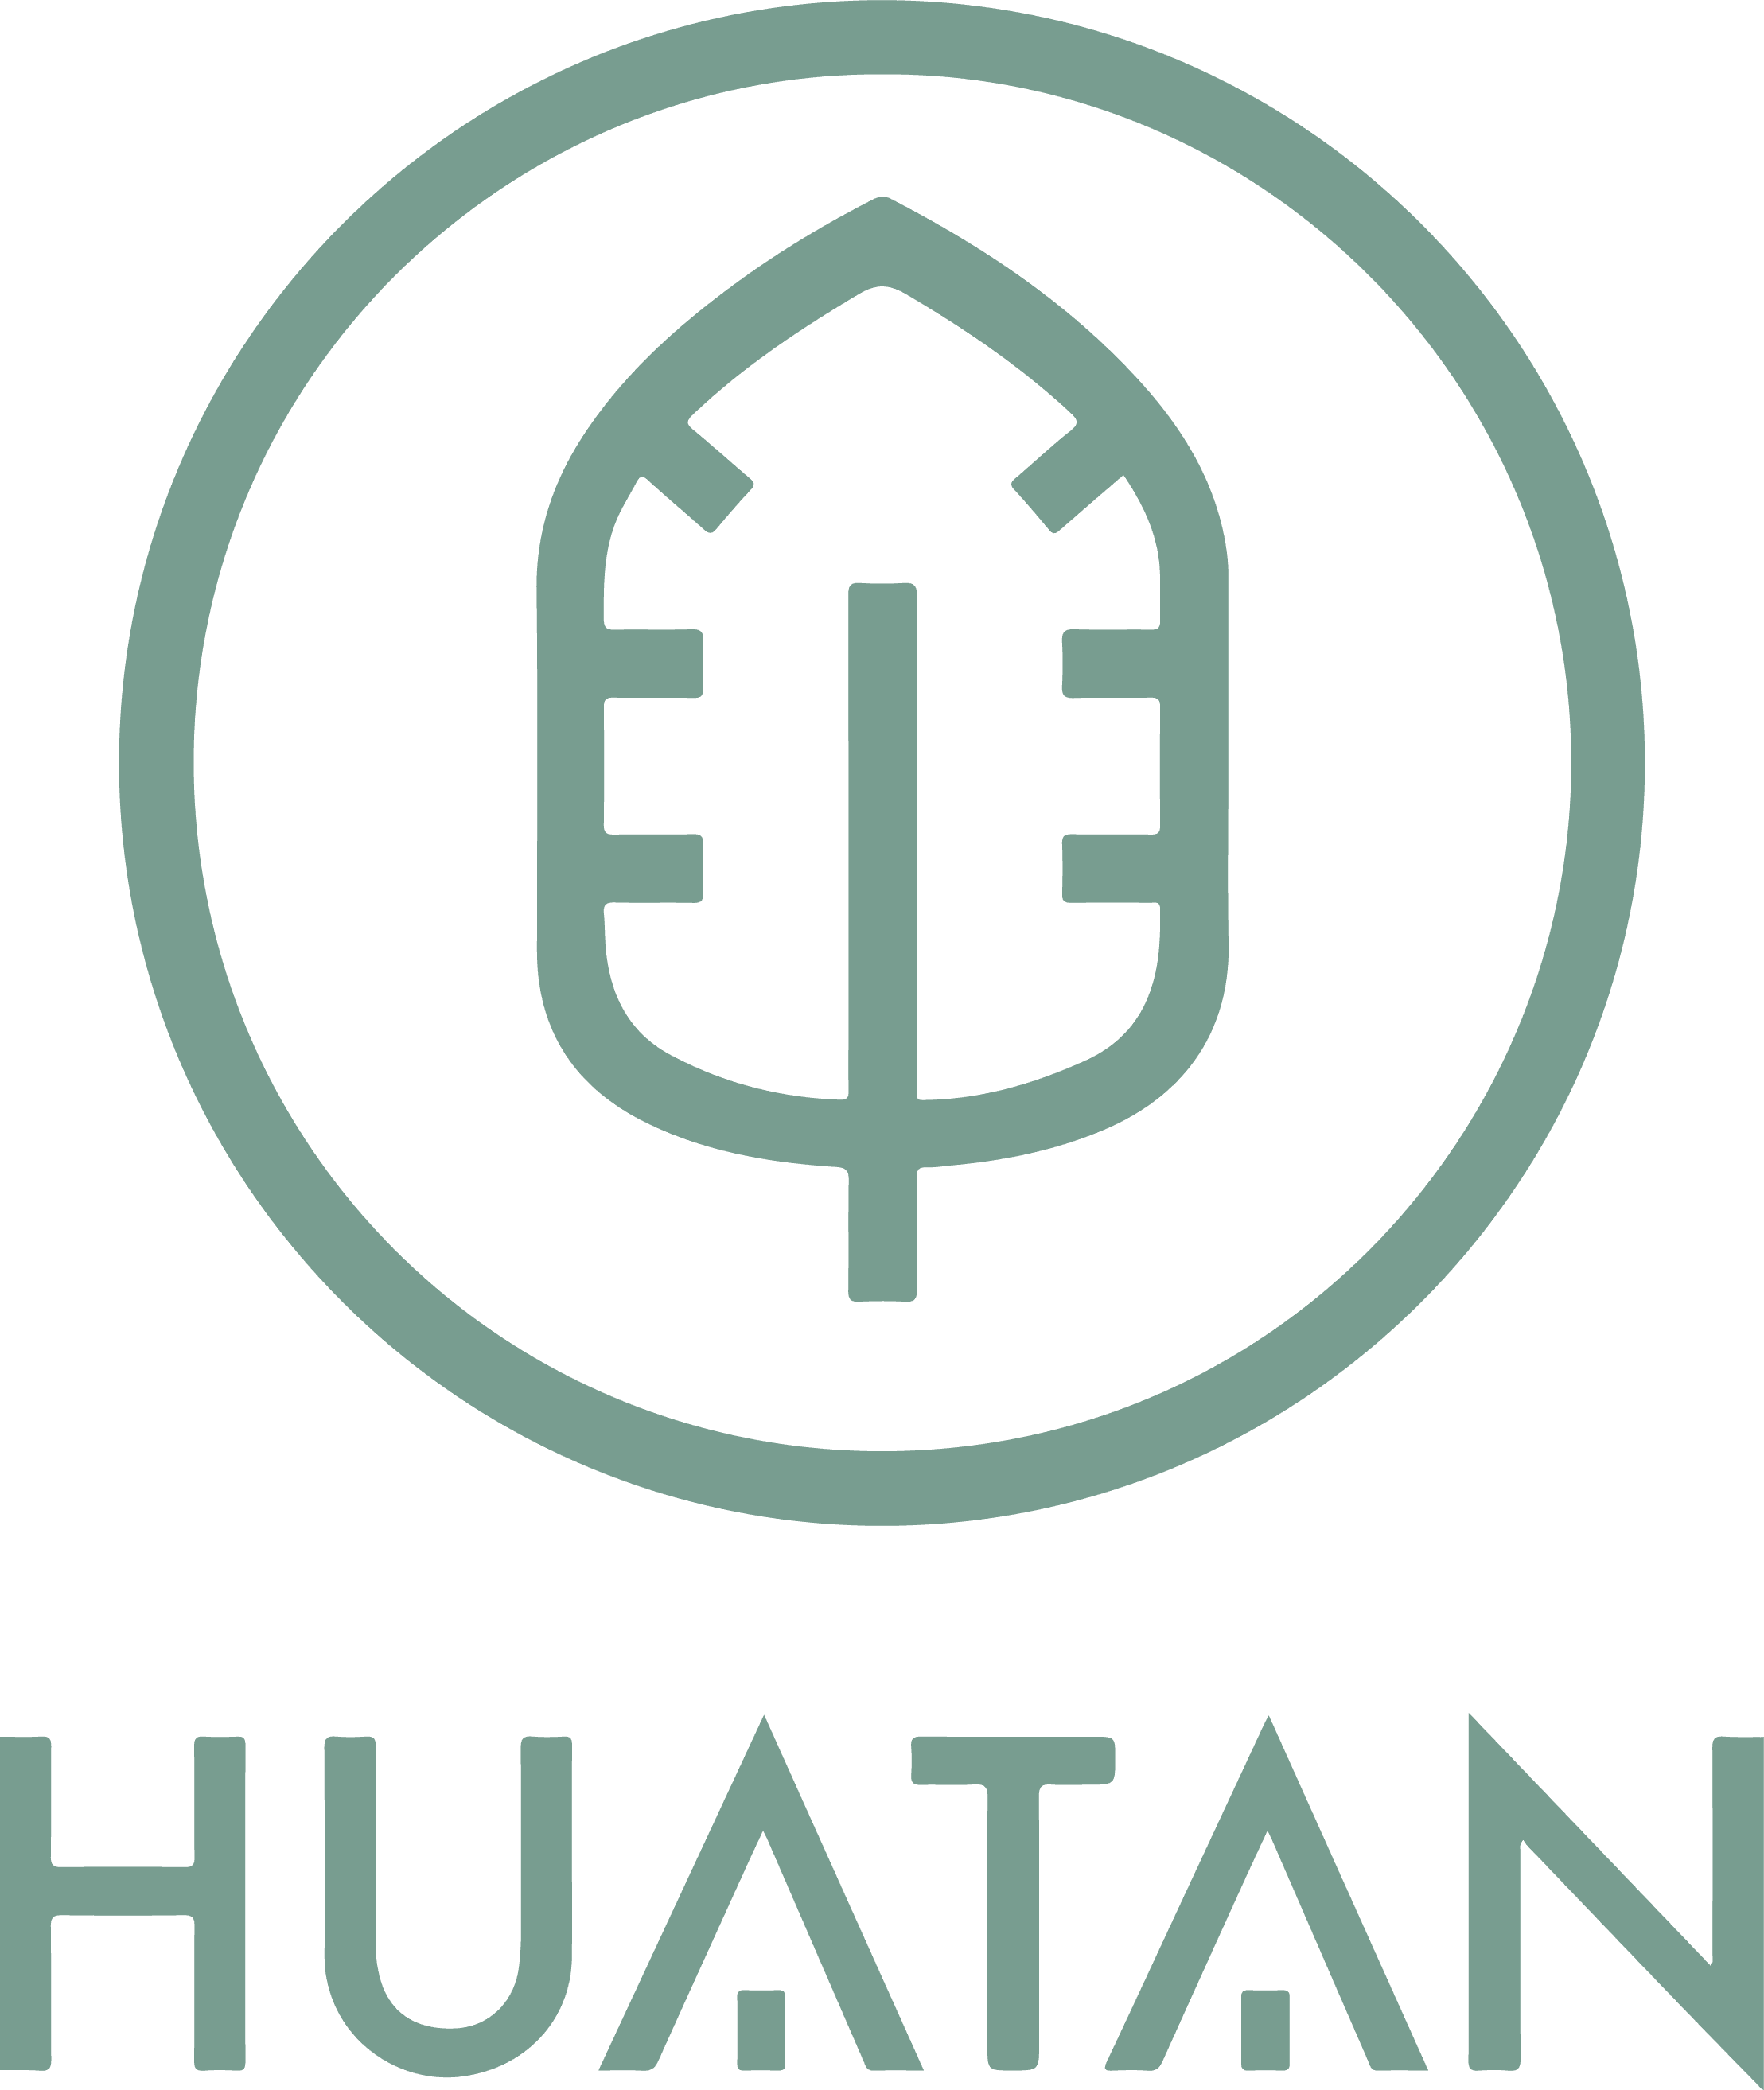 Huatan